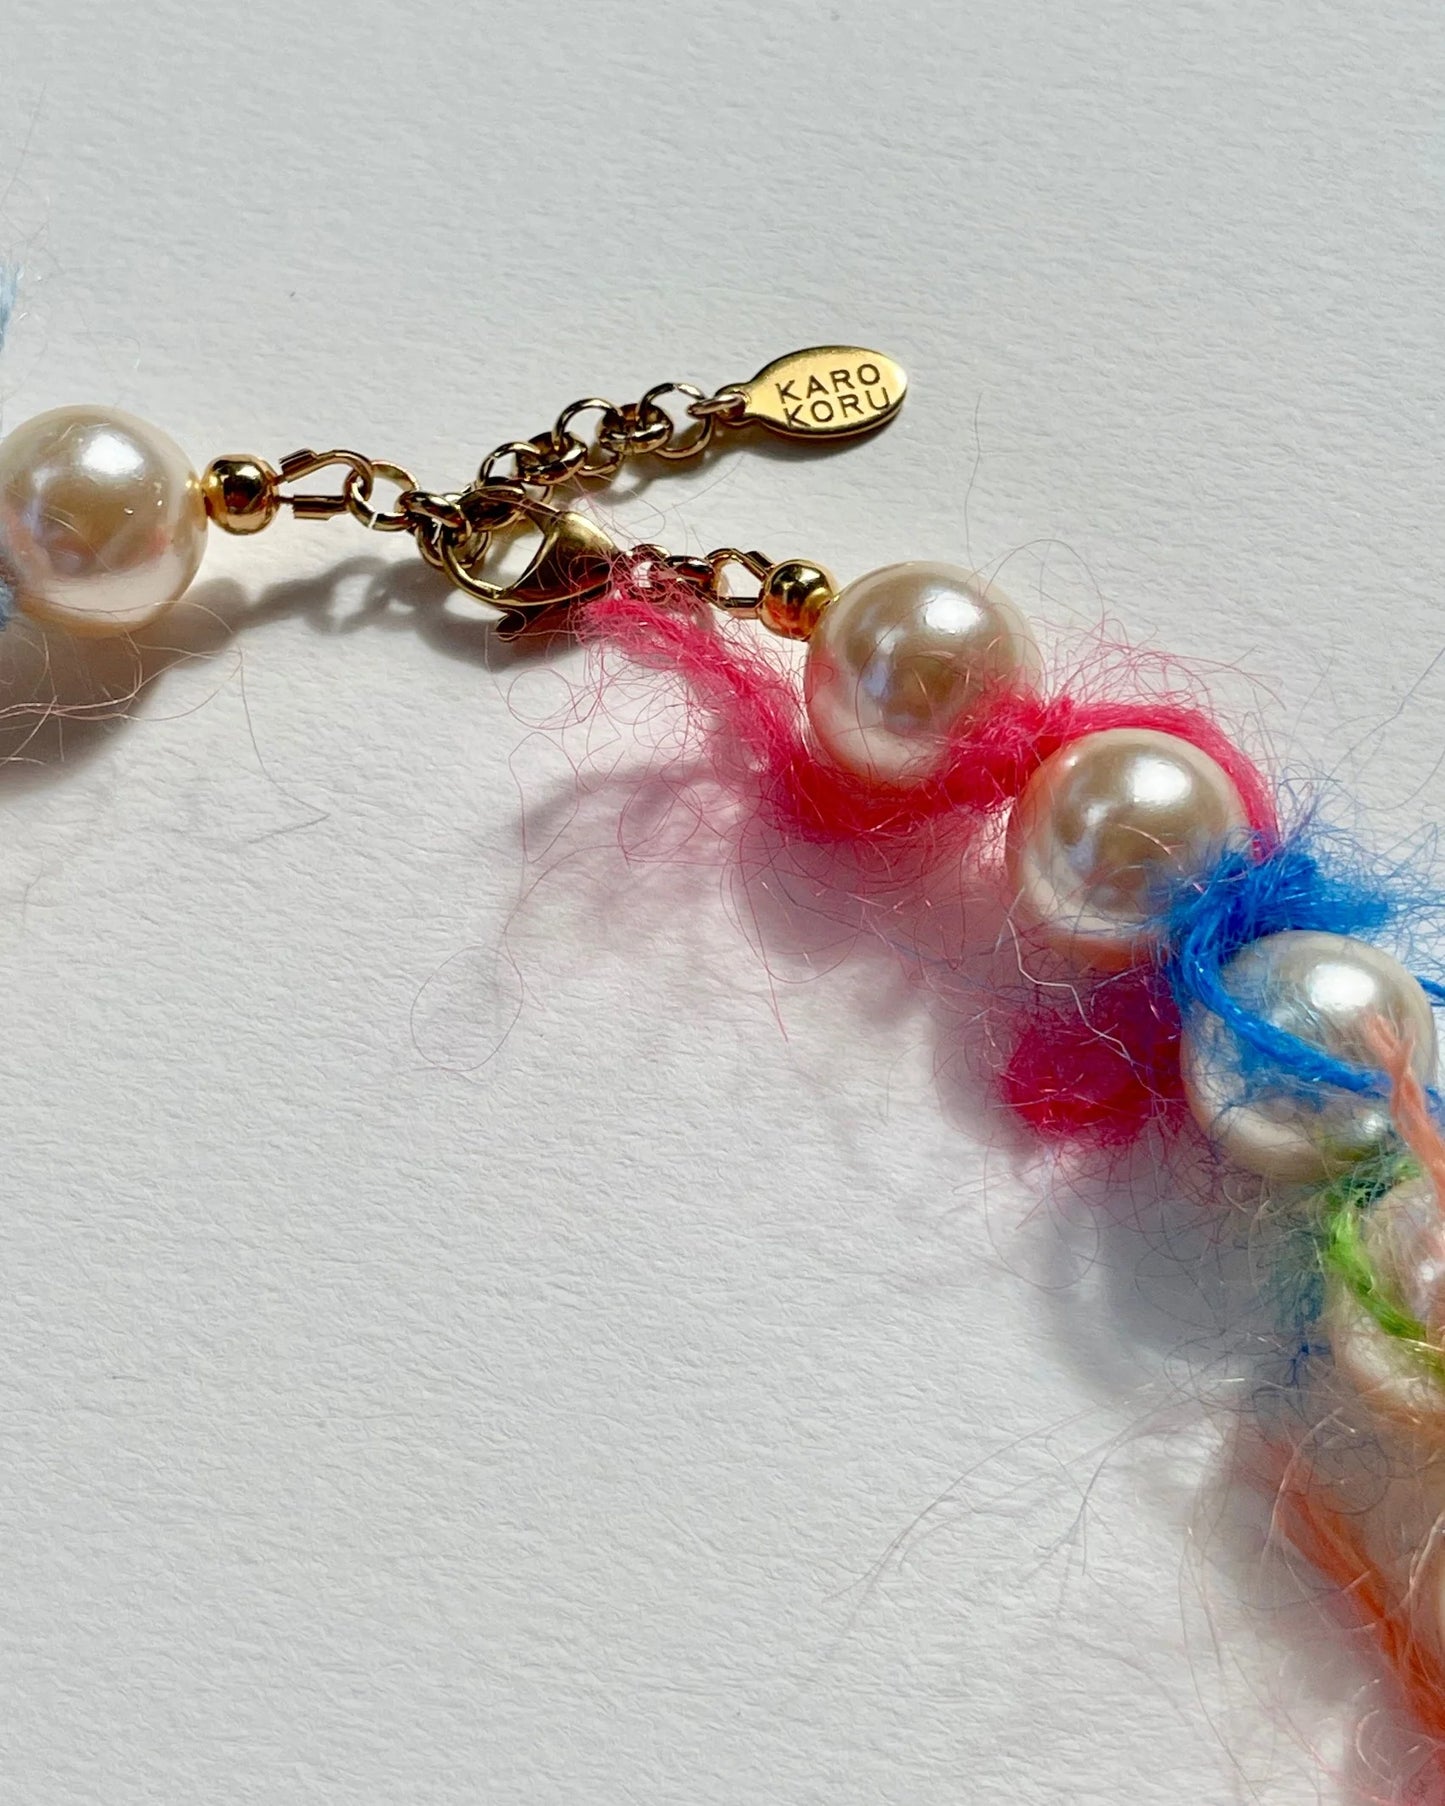 Collier de perles Mohair Multicolore - Rainbow Mohair Necklace - Karo Koru